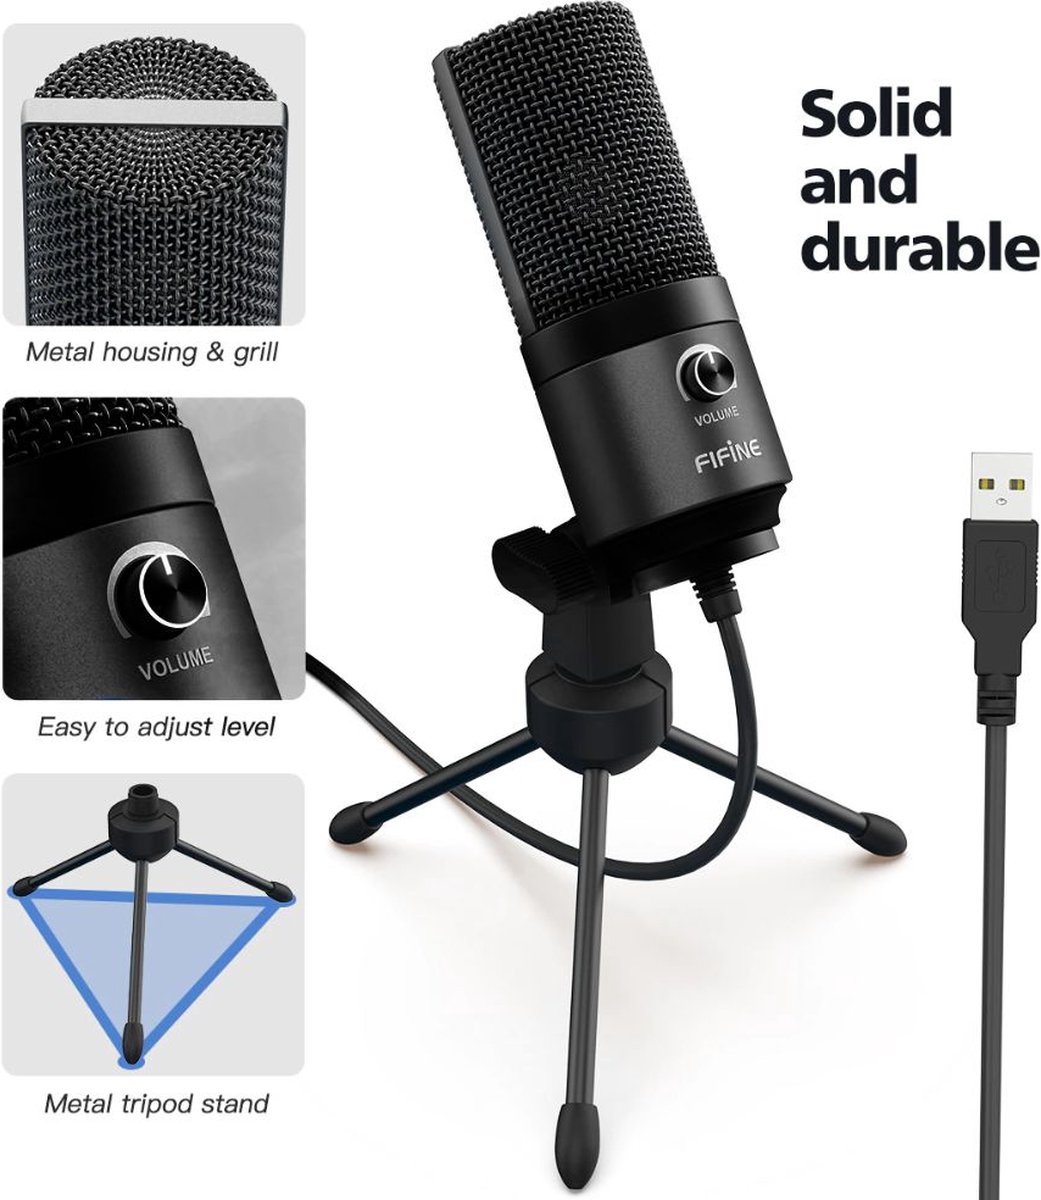 Professionele microfoon | Voor podcast, video's, streaming, karaoke | USB verbinding | Met standaard